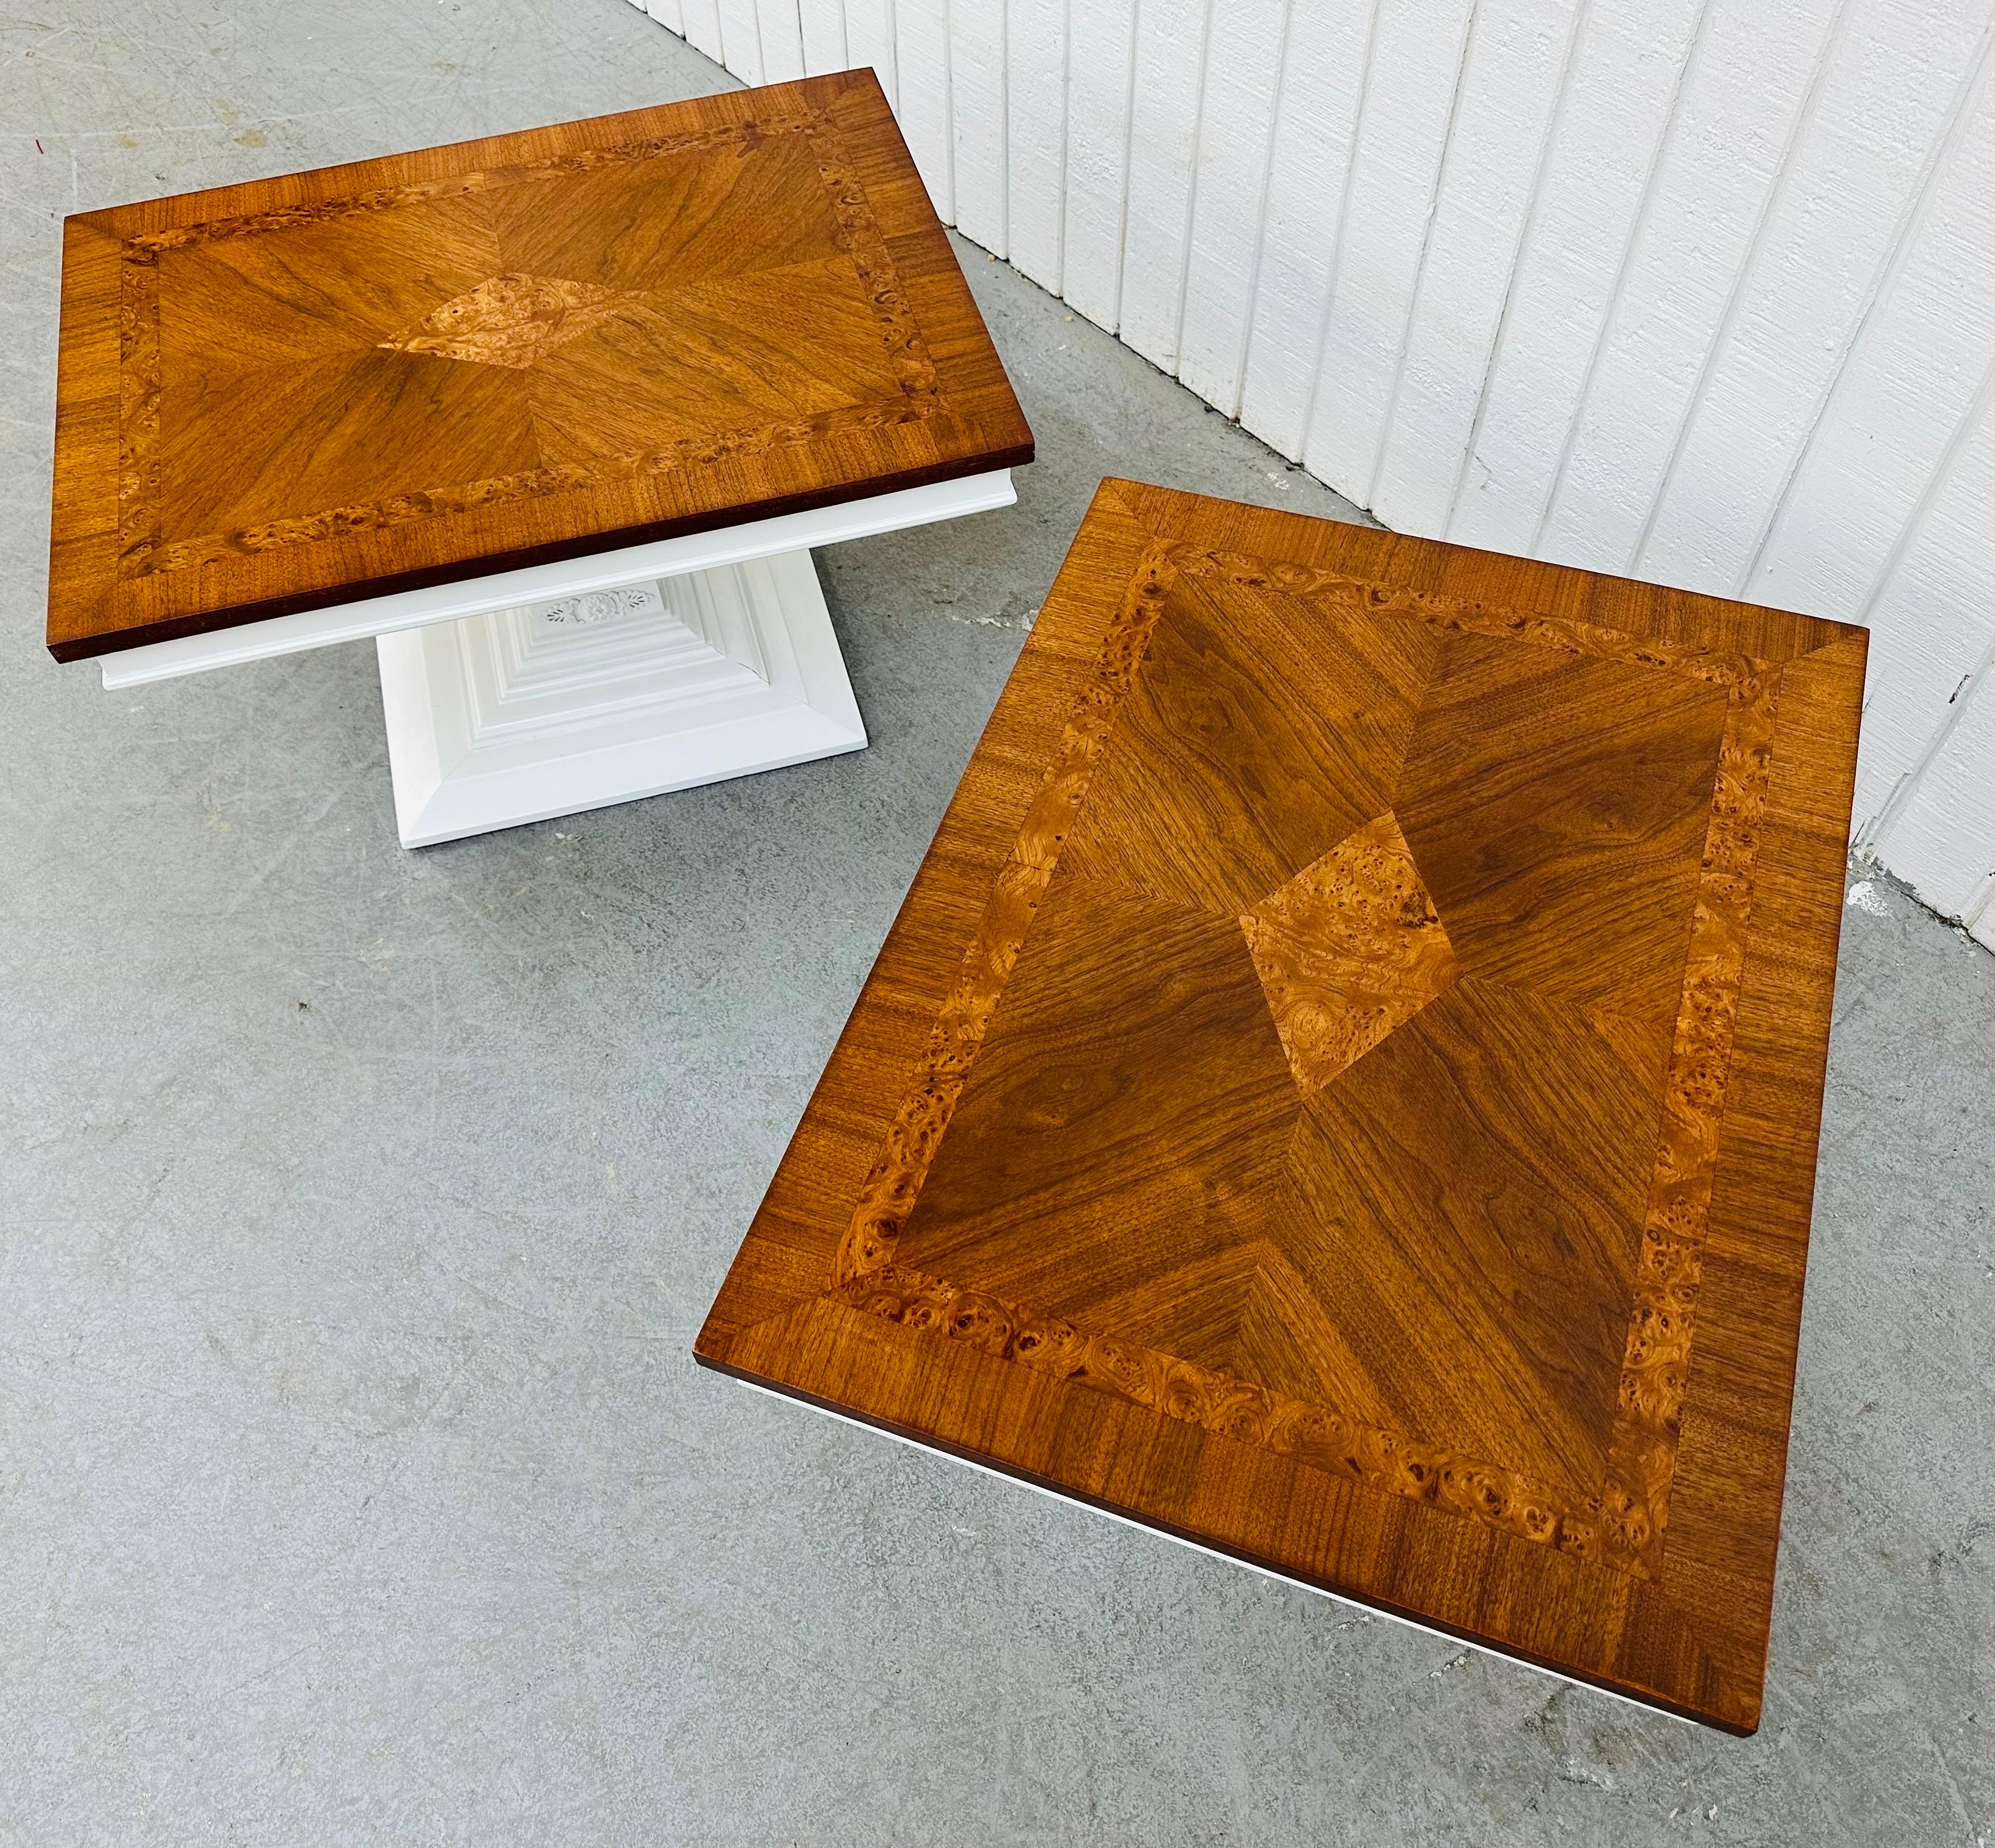 Diese Auflistung ist für ein Paar von Vintage Burled Walnut Side Tables. Er hat eine rechteckige Platte, einen weiß lackierten Sockel und eine schöne Nussbaumplatte mit Noppeneinlage. Dies ist eine außergewöhnliche Kombination aus Qualität und